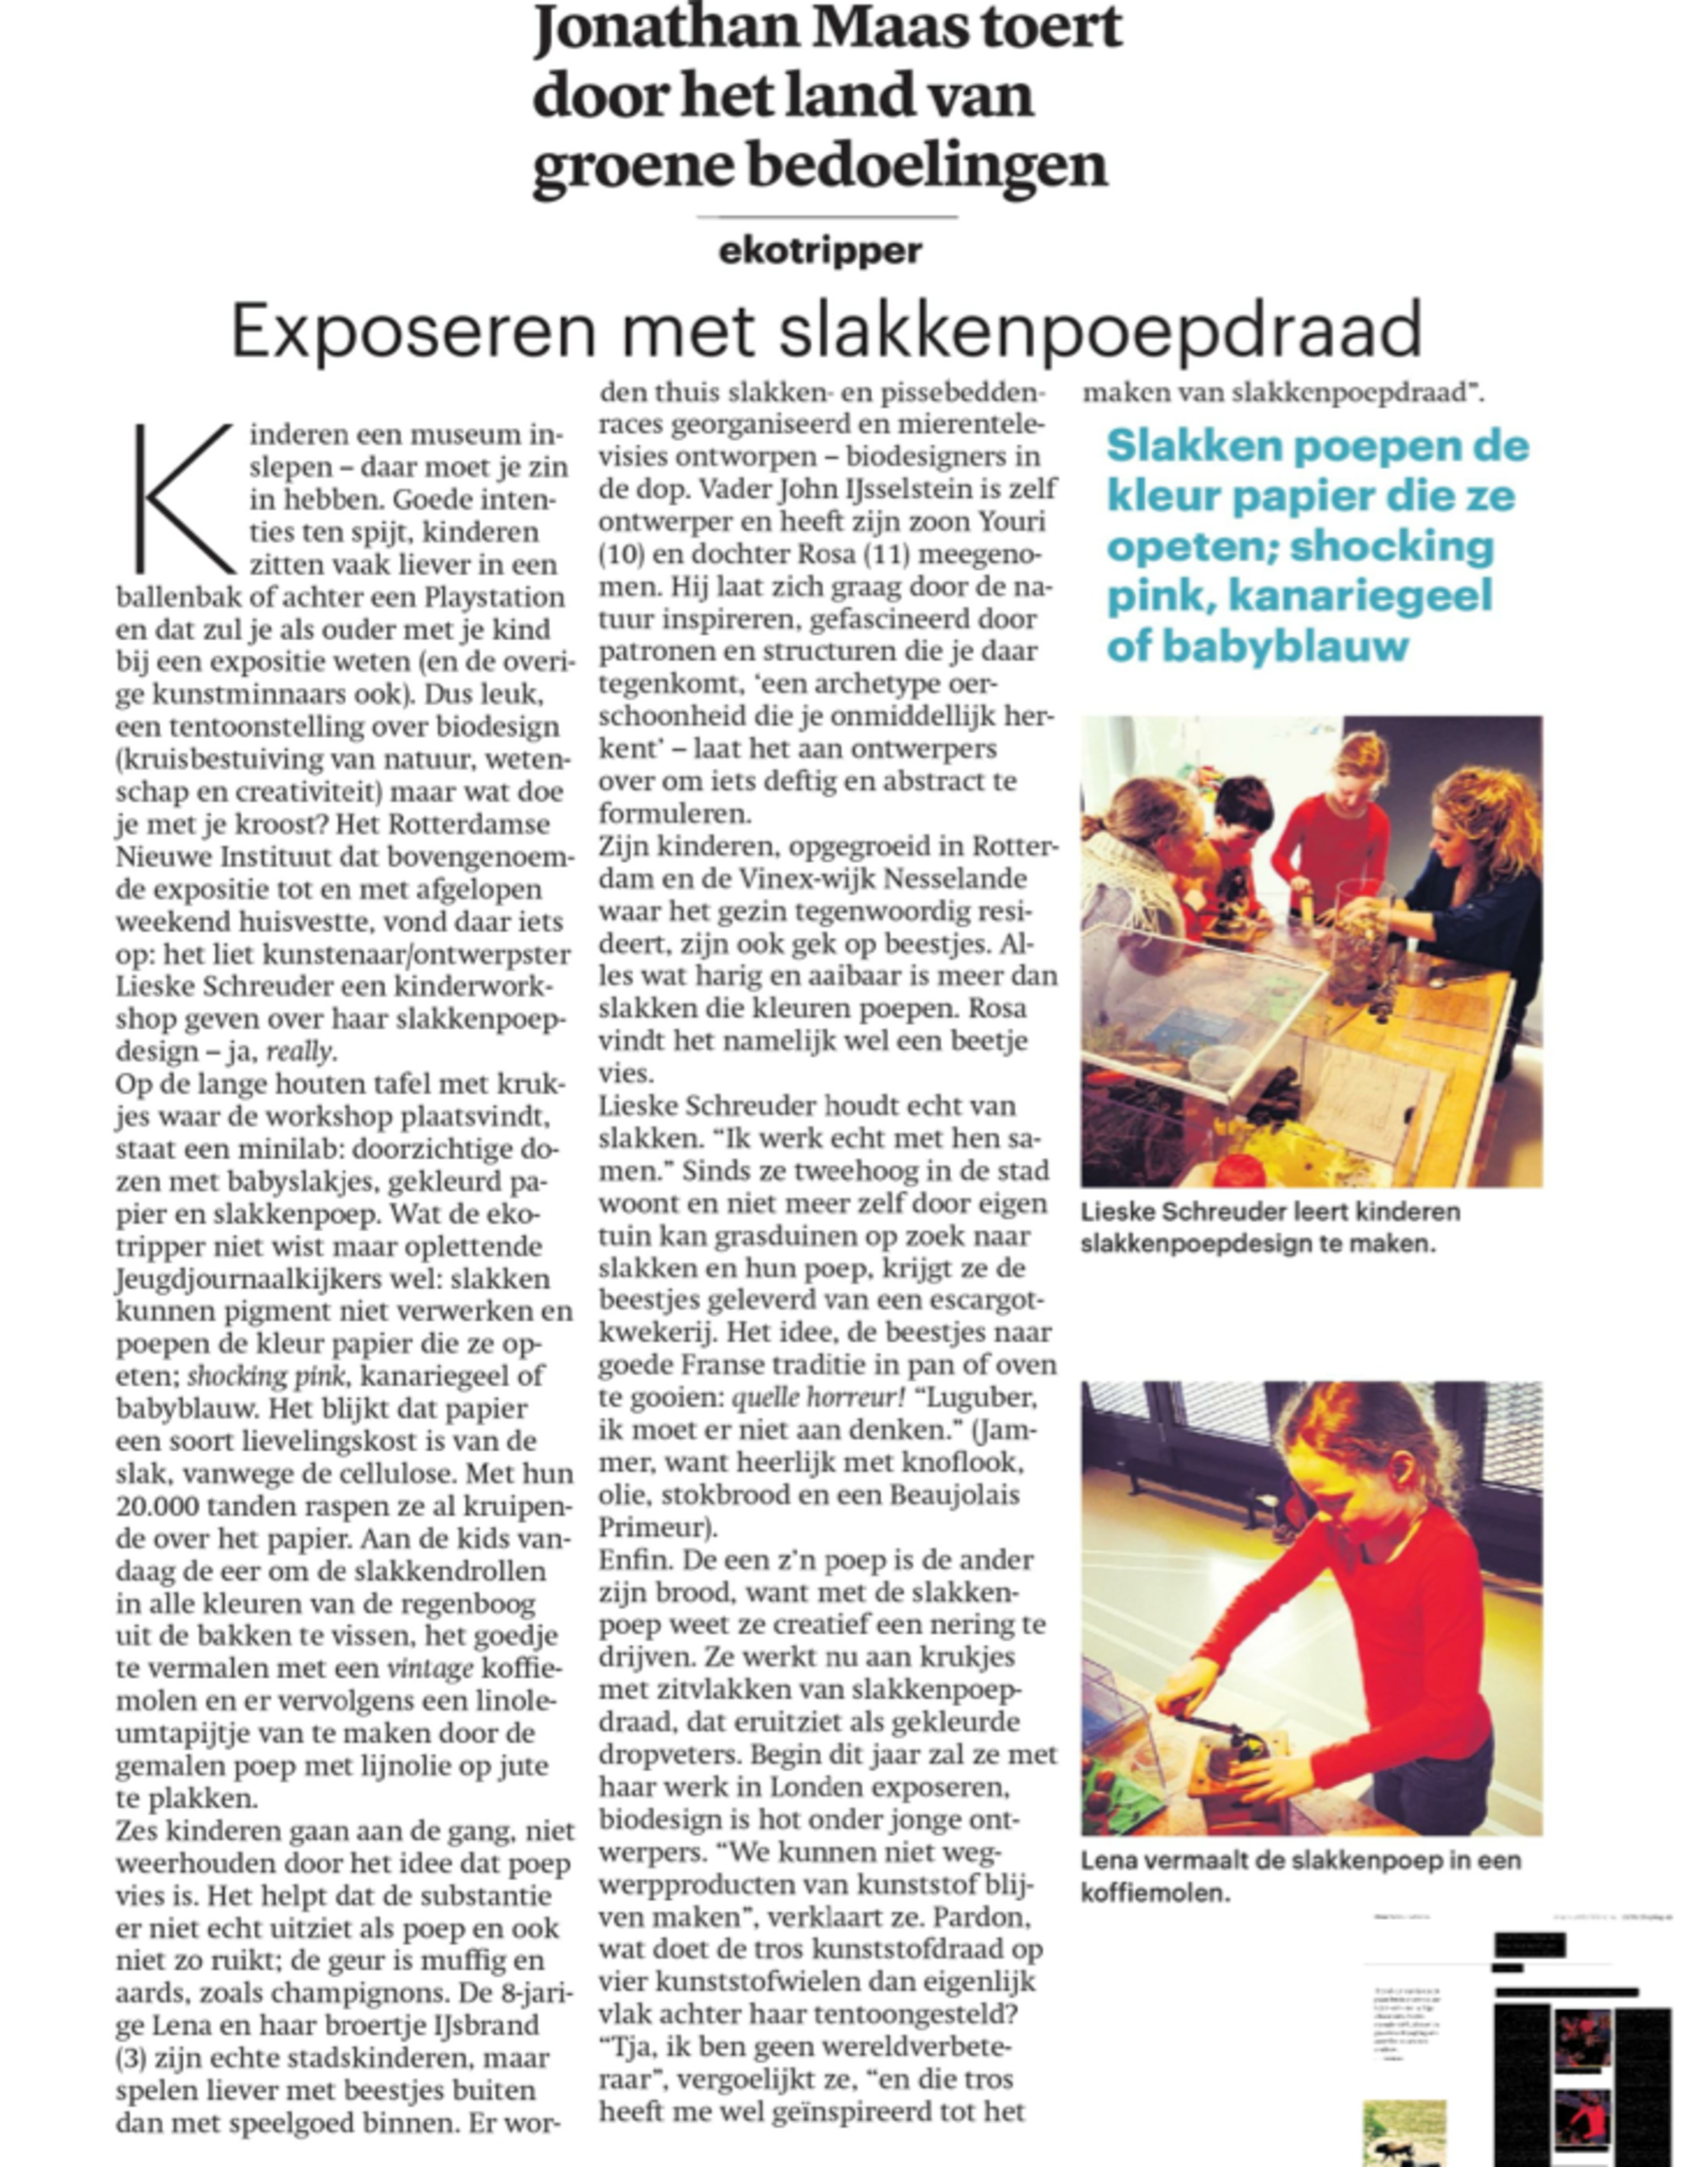 Dagblad Trouw 8/1/2014: Exposeren met slakkenpoepdraad